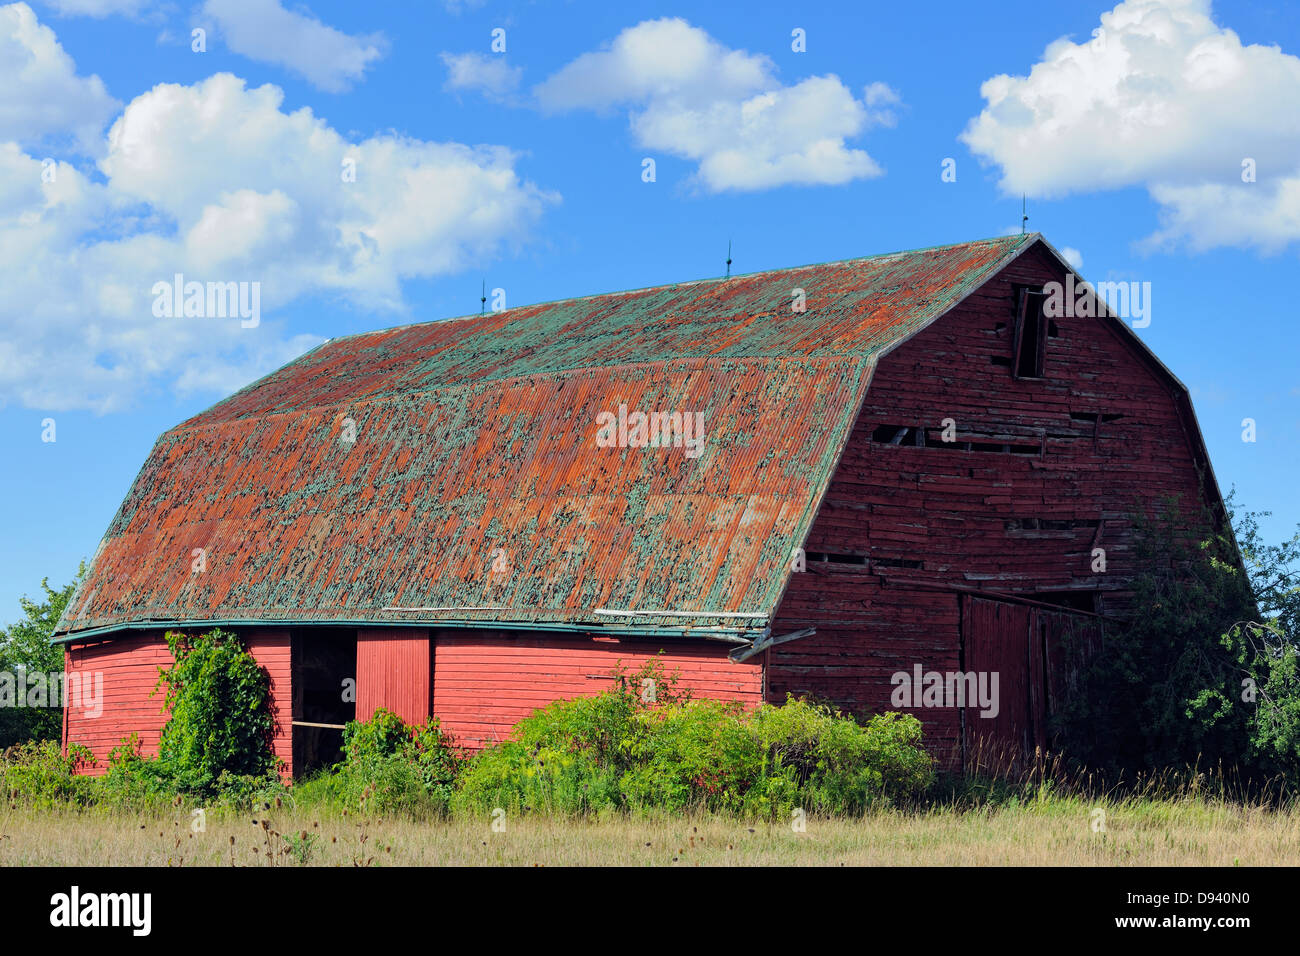 Le vieillissement de la grange rouge Thorold, Ontario Canada Banque D'Images